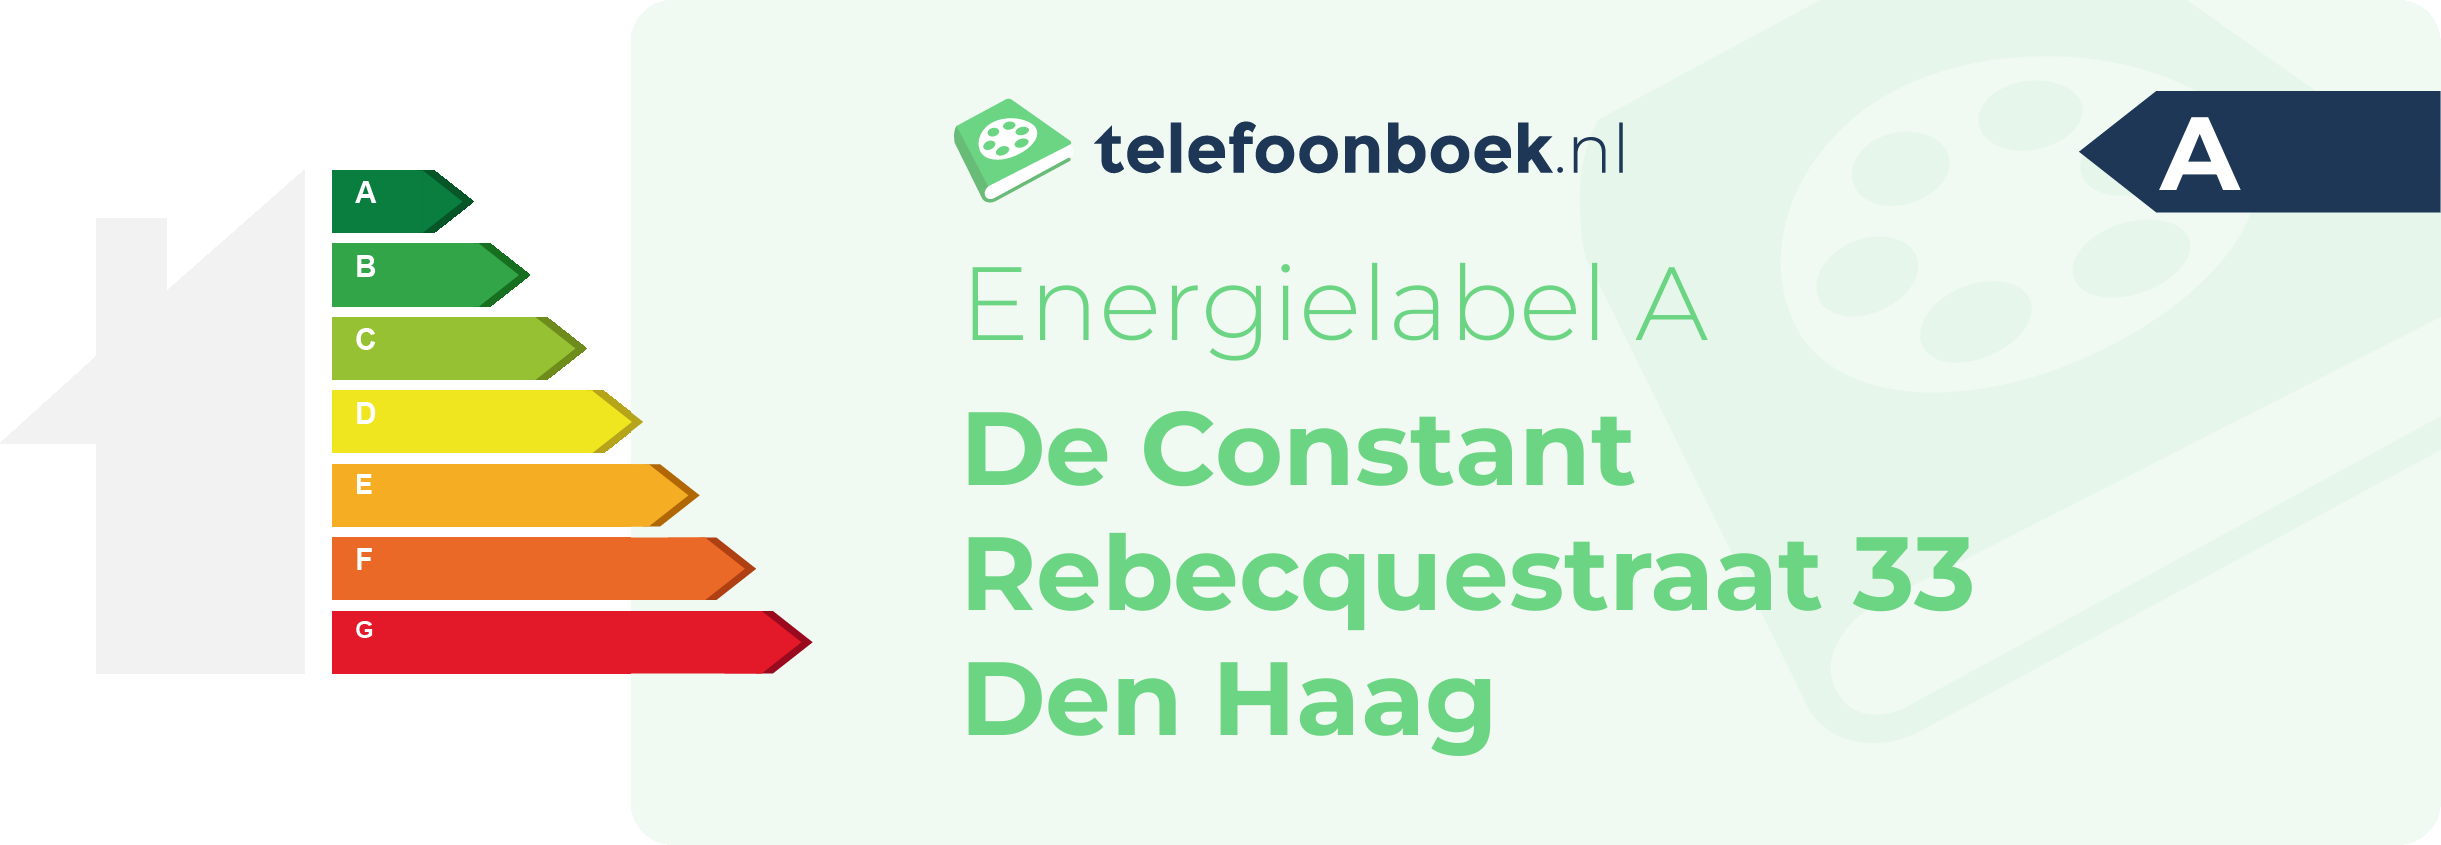 Energielabel De Constant Rebecquestraat 33 Den Haag